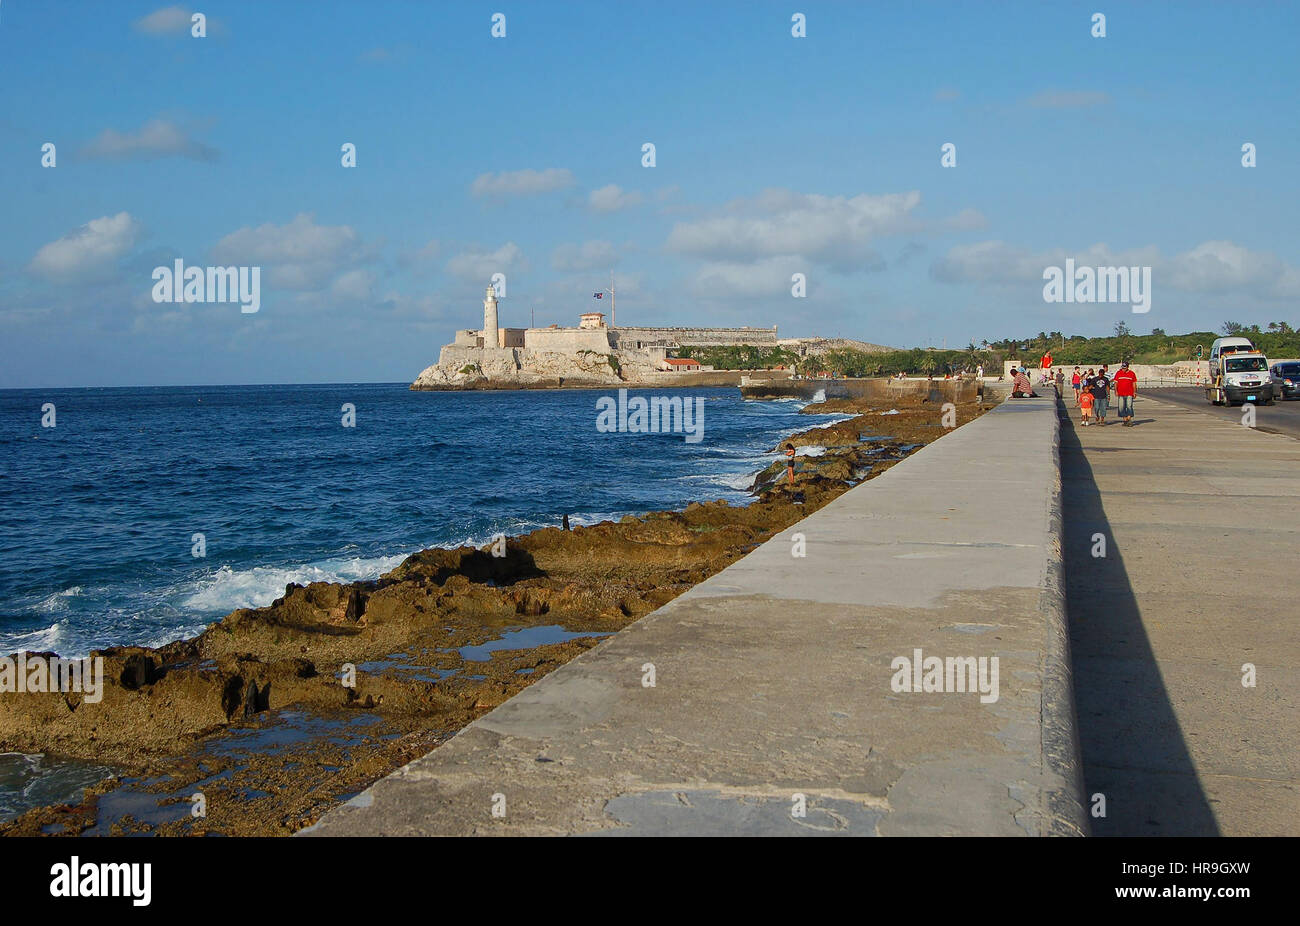 The Malecon, the promenade and sea wall, with Castillo del Morro in the background.  City of Havana, Cuba Stock Photo